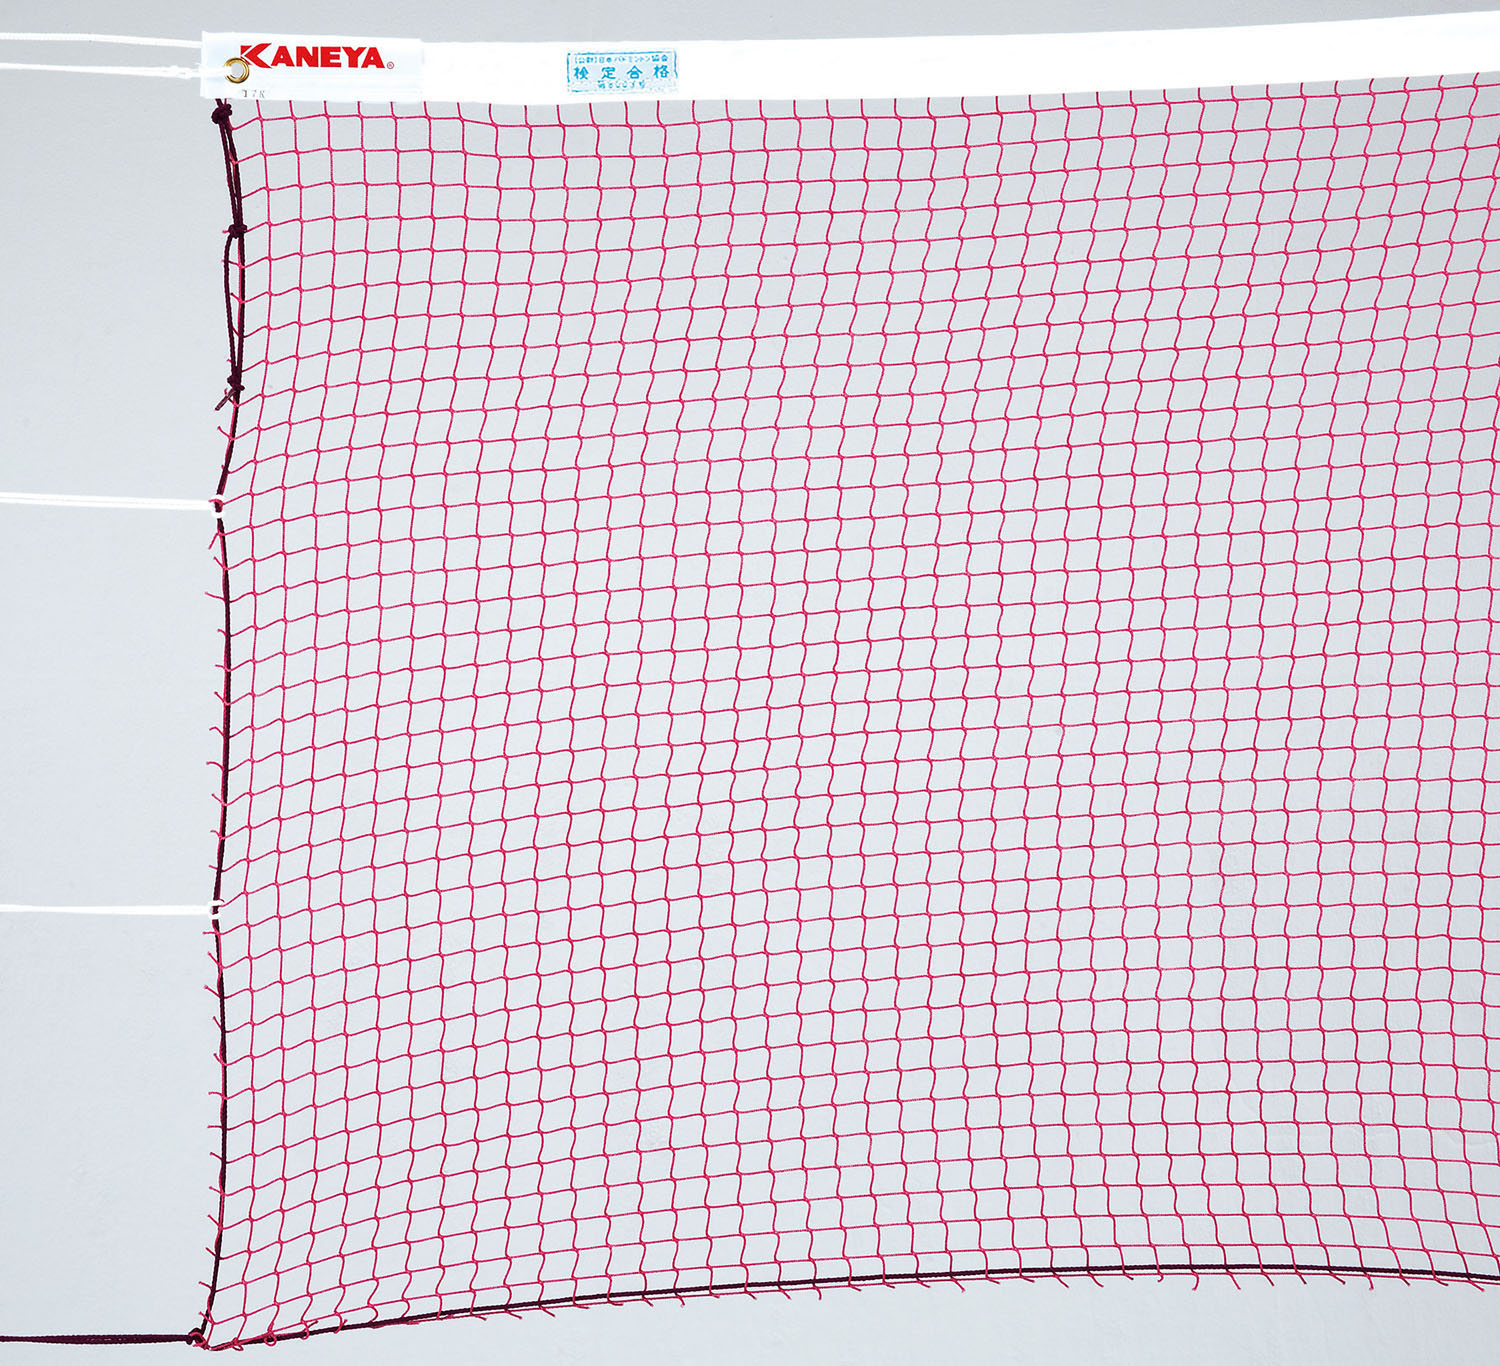 材質：ナイロンサイズ：長 6.02 m×巾 0.76 mネット太さ： 235 T /24 本上部ロープ：ビニロン防縮カラー：赤茶梱包サイズ： 39 × 12 × 12 cm日本バドミントン協会検定品ネット。